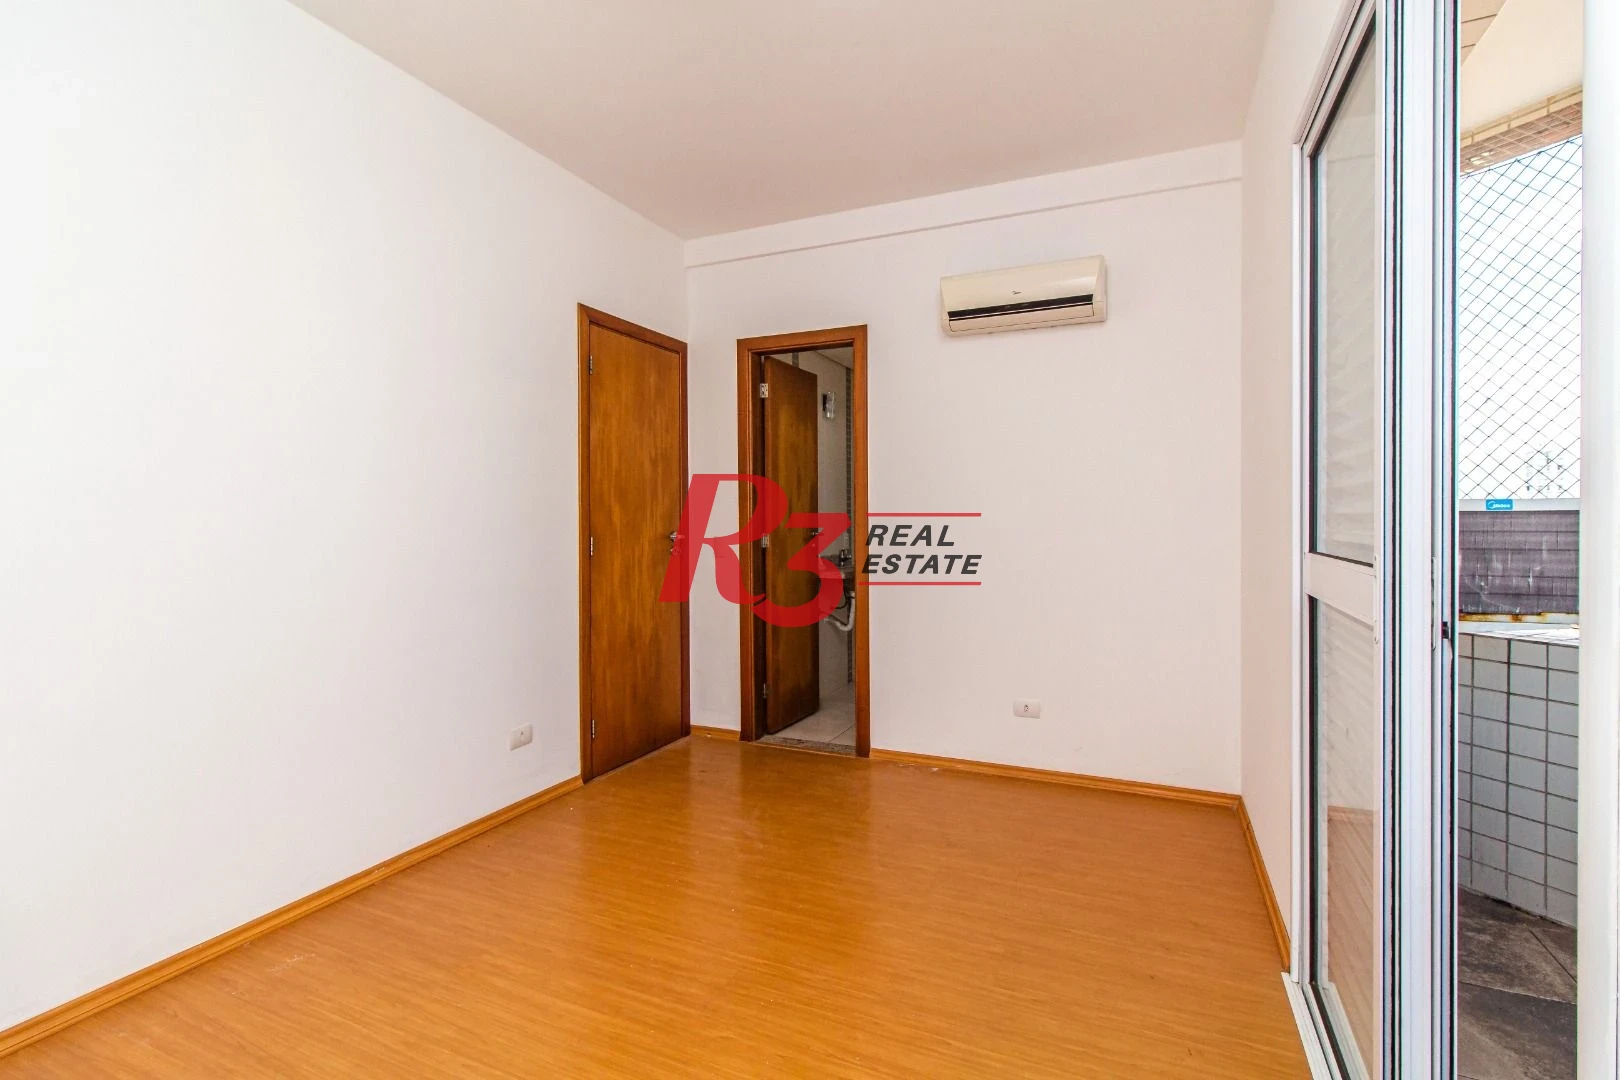 Apartamento com 2 dormitórios à venda, 80 m² por R$ 580.000,00 - Macuco - Santos/SP